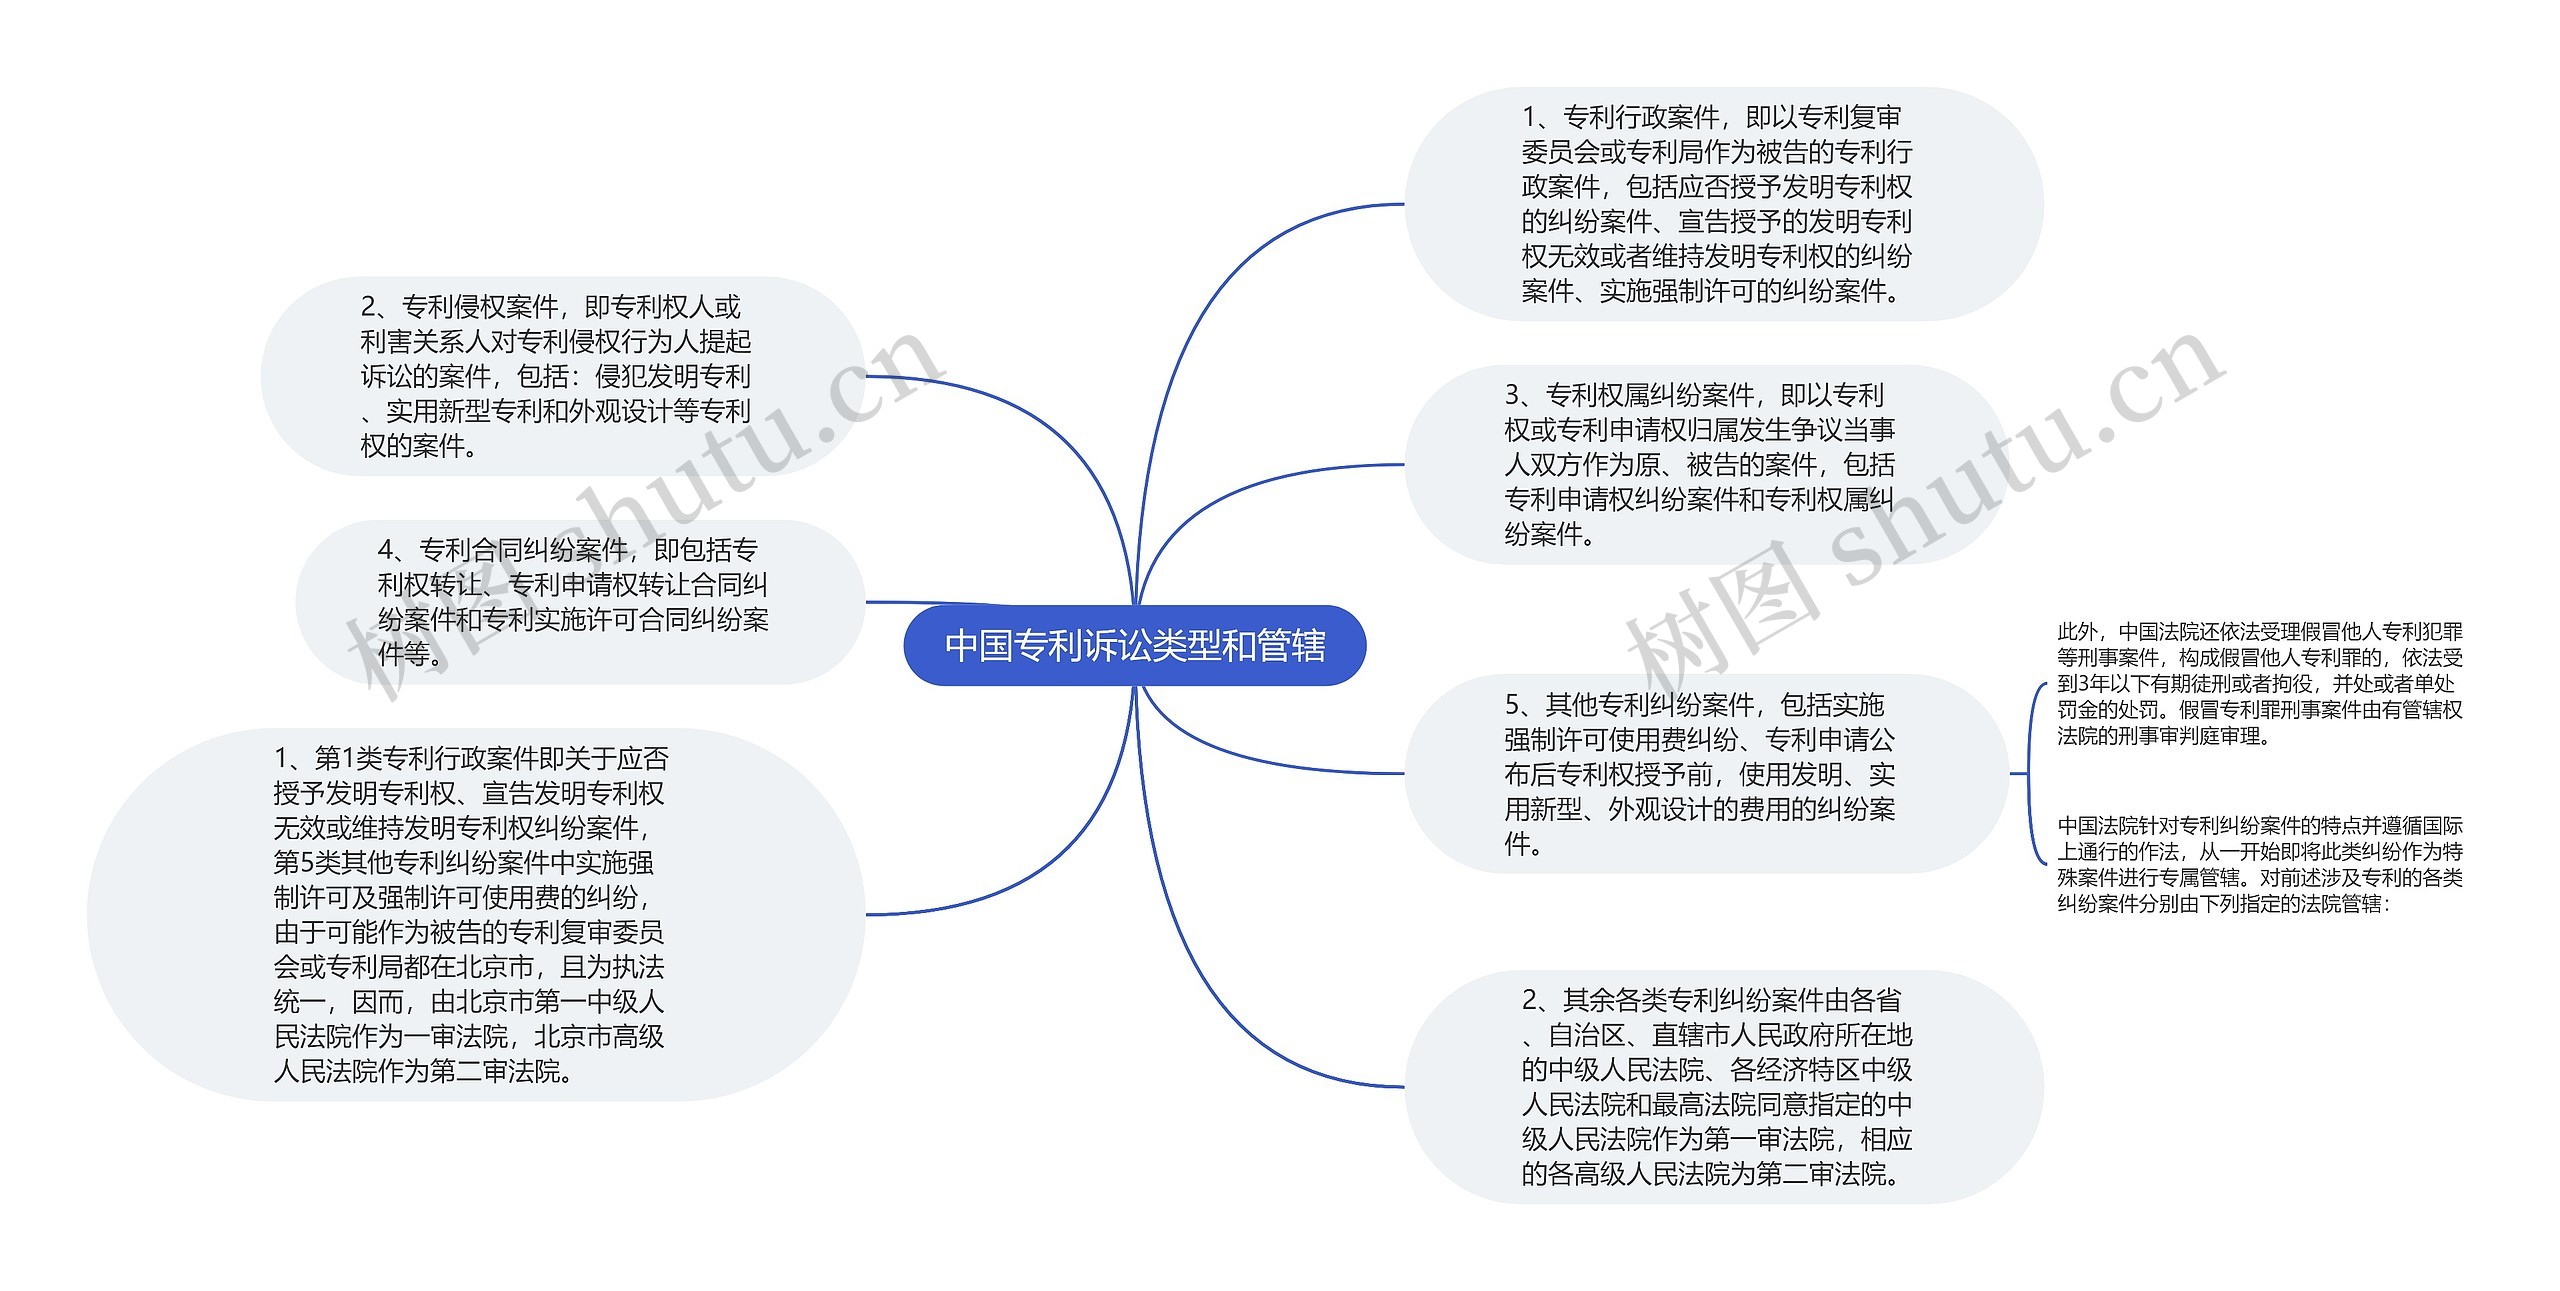 中国专利诉讼类型和管辖